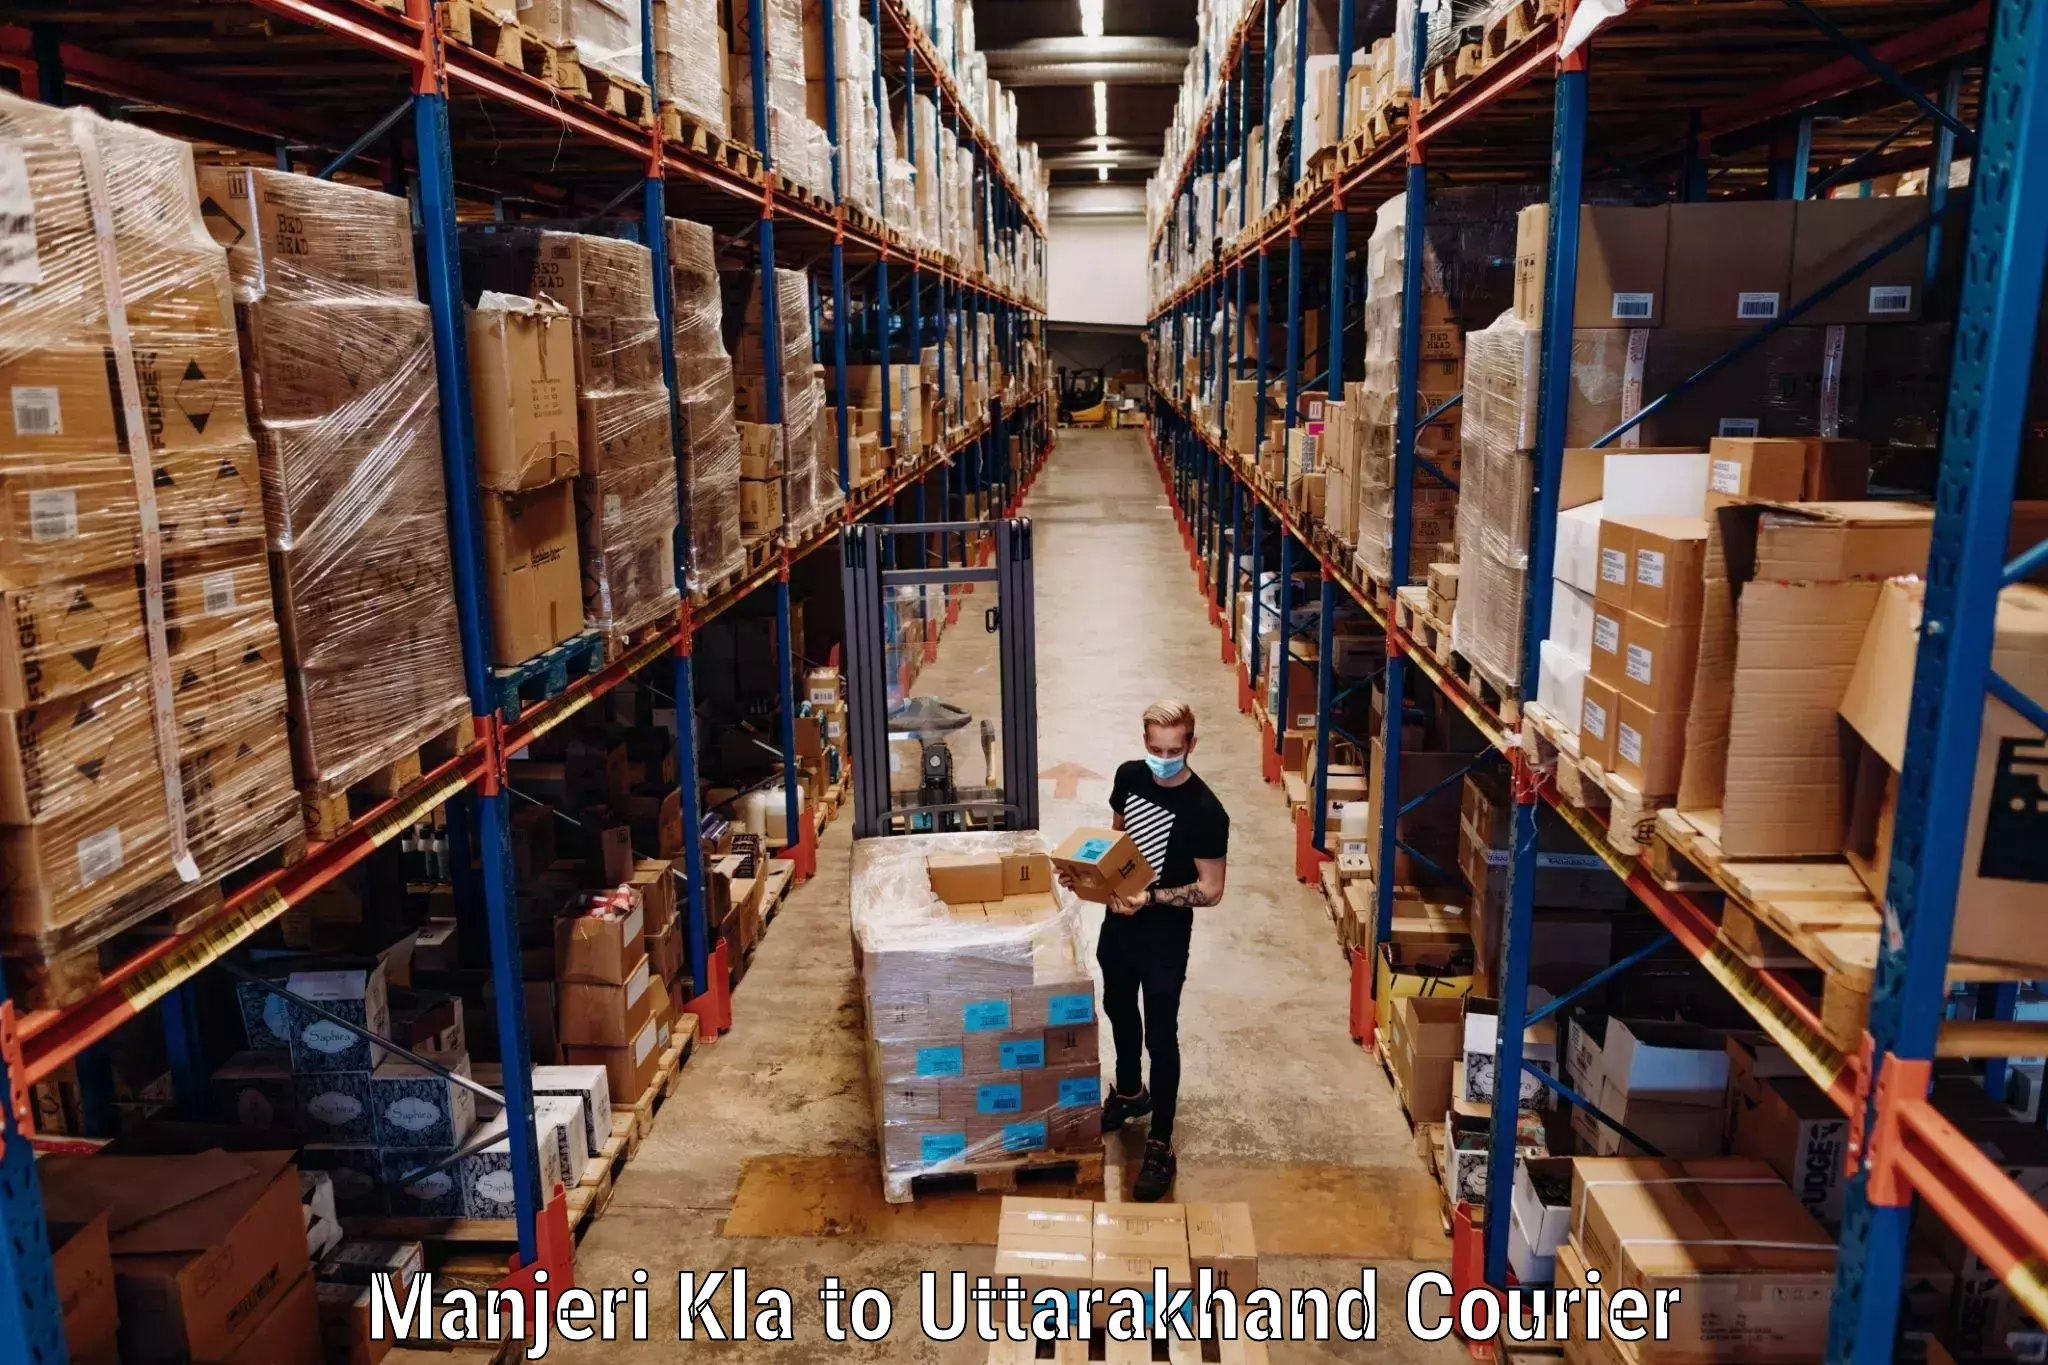 Baggage shipping advice Manjeri Kla to Uttarakhand